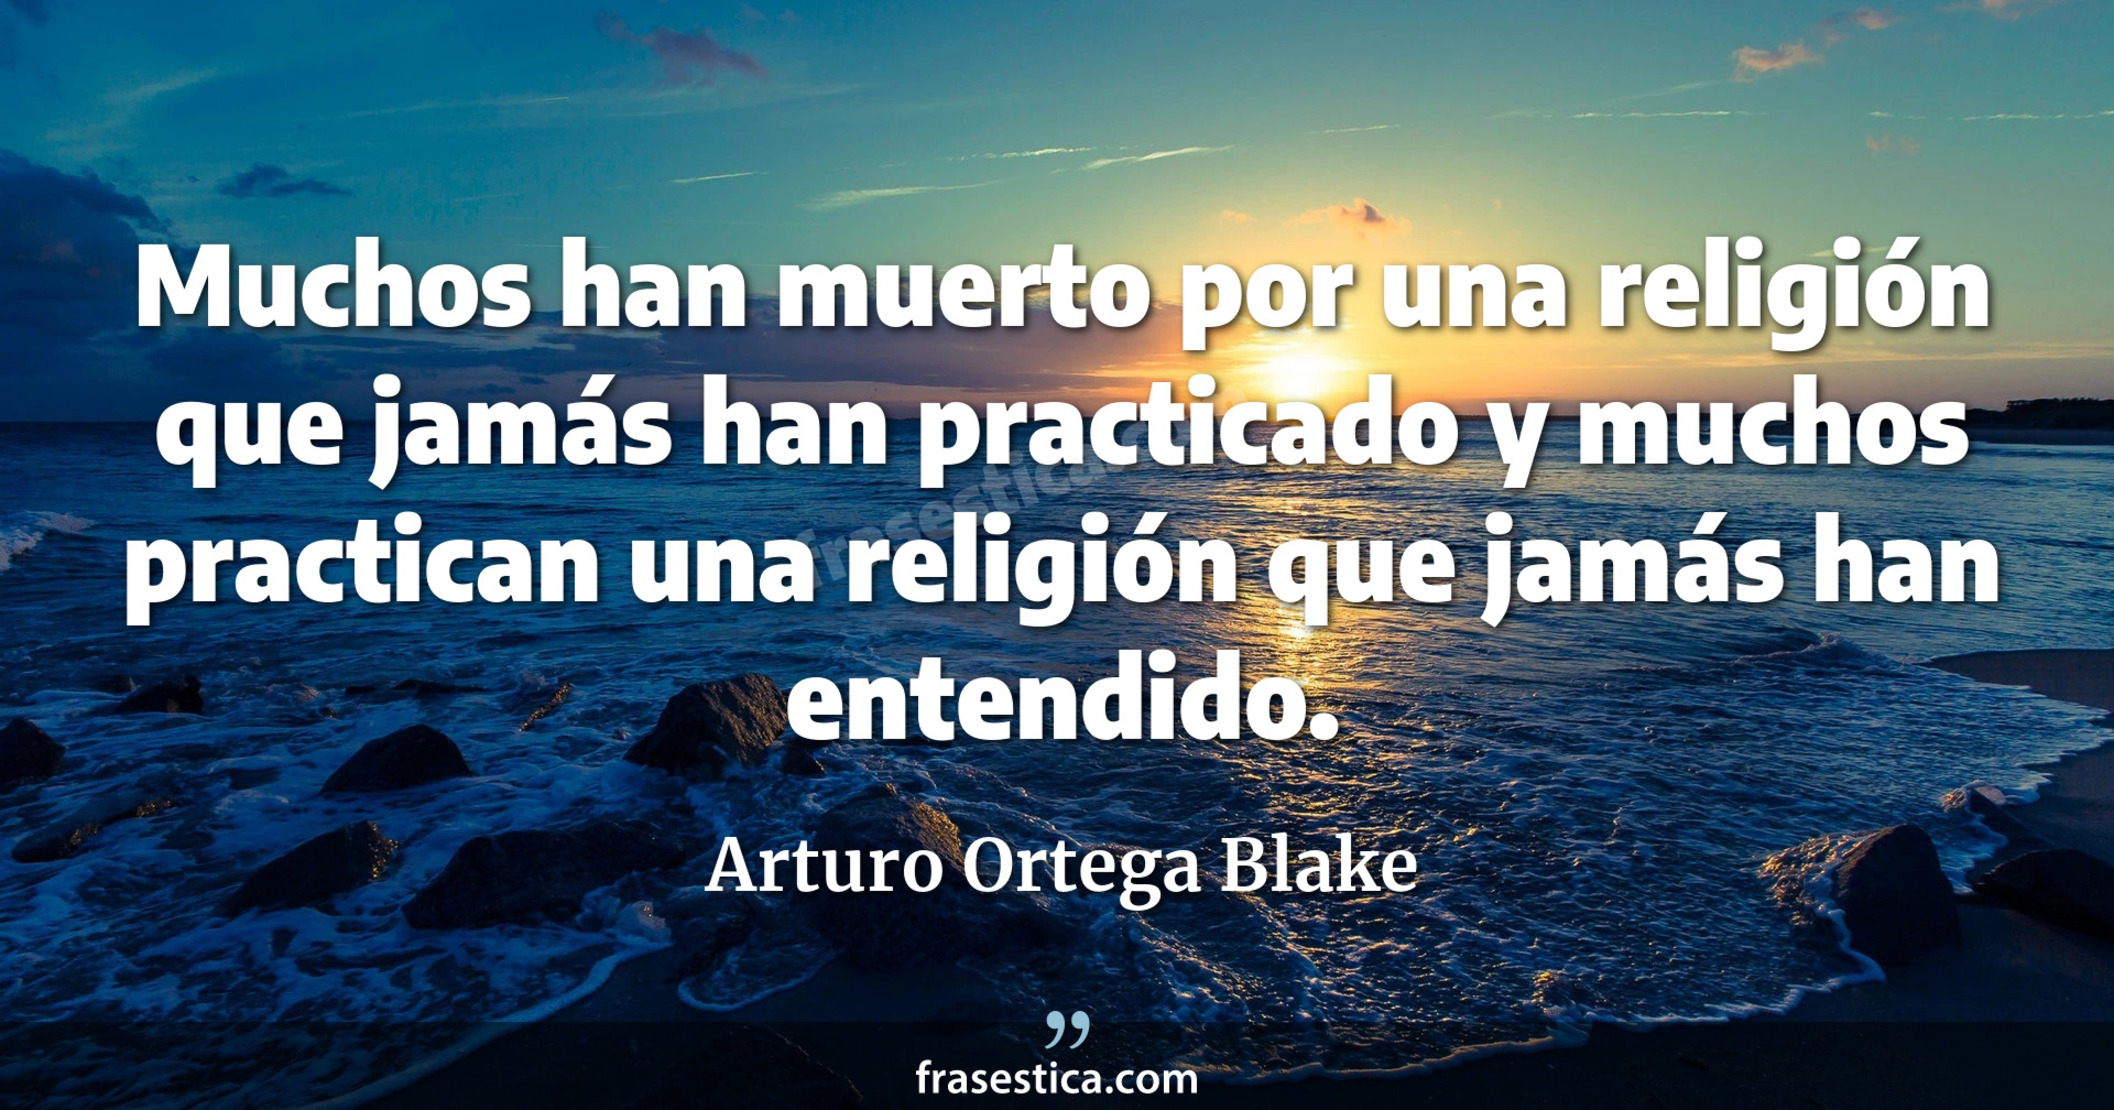 Muchos han muerto por una religión que jamás han practicado y muchos practican una religión que jamás han entendido. - Arturo Ortega Blake